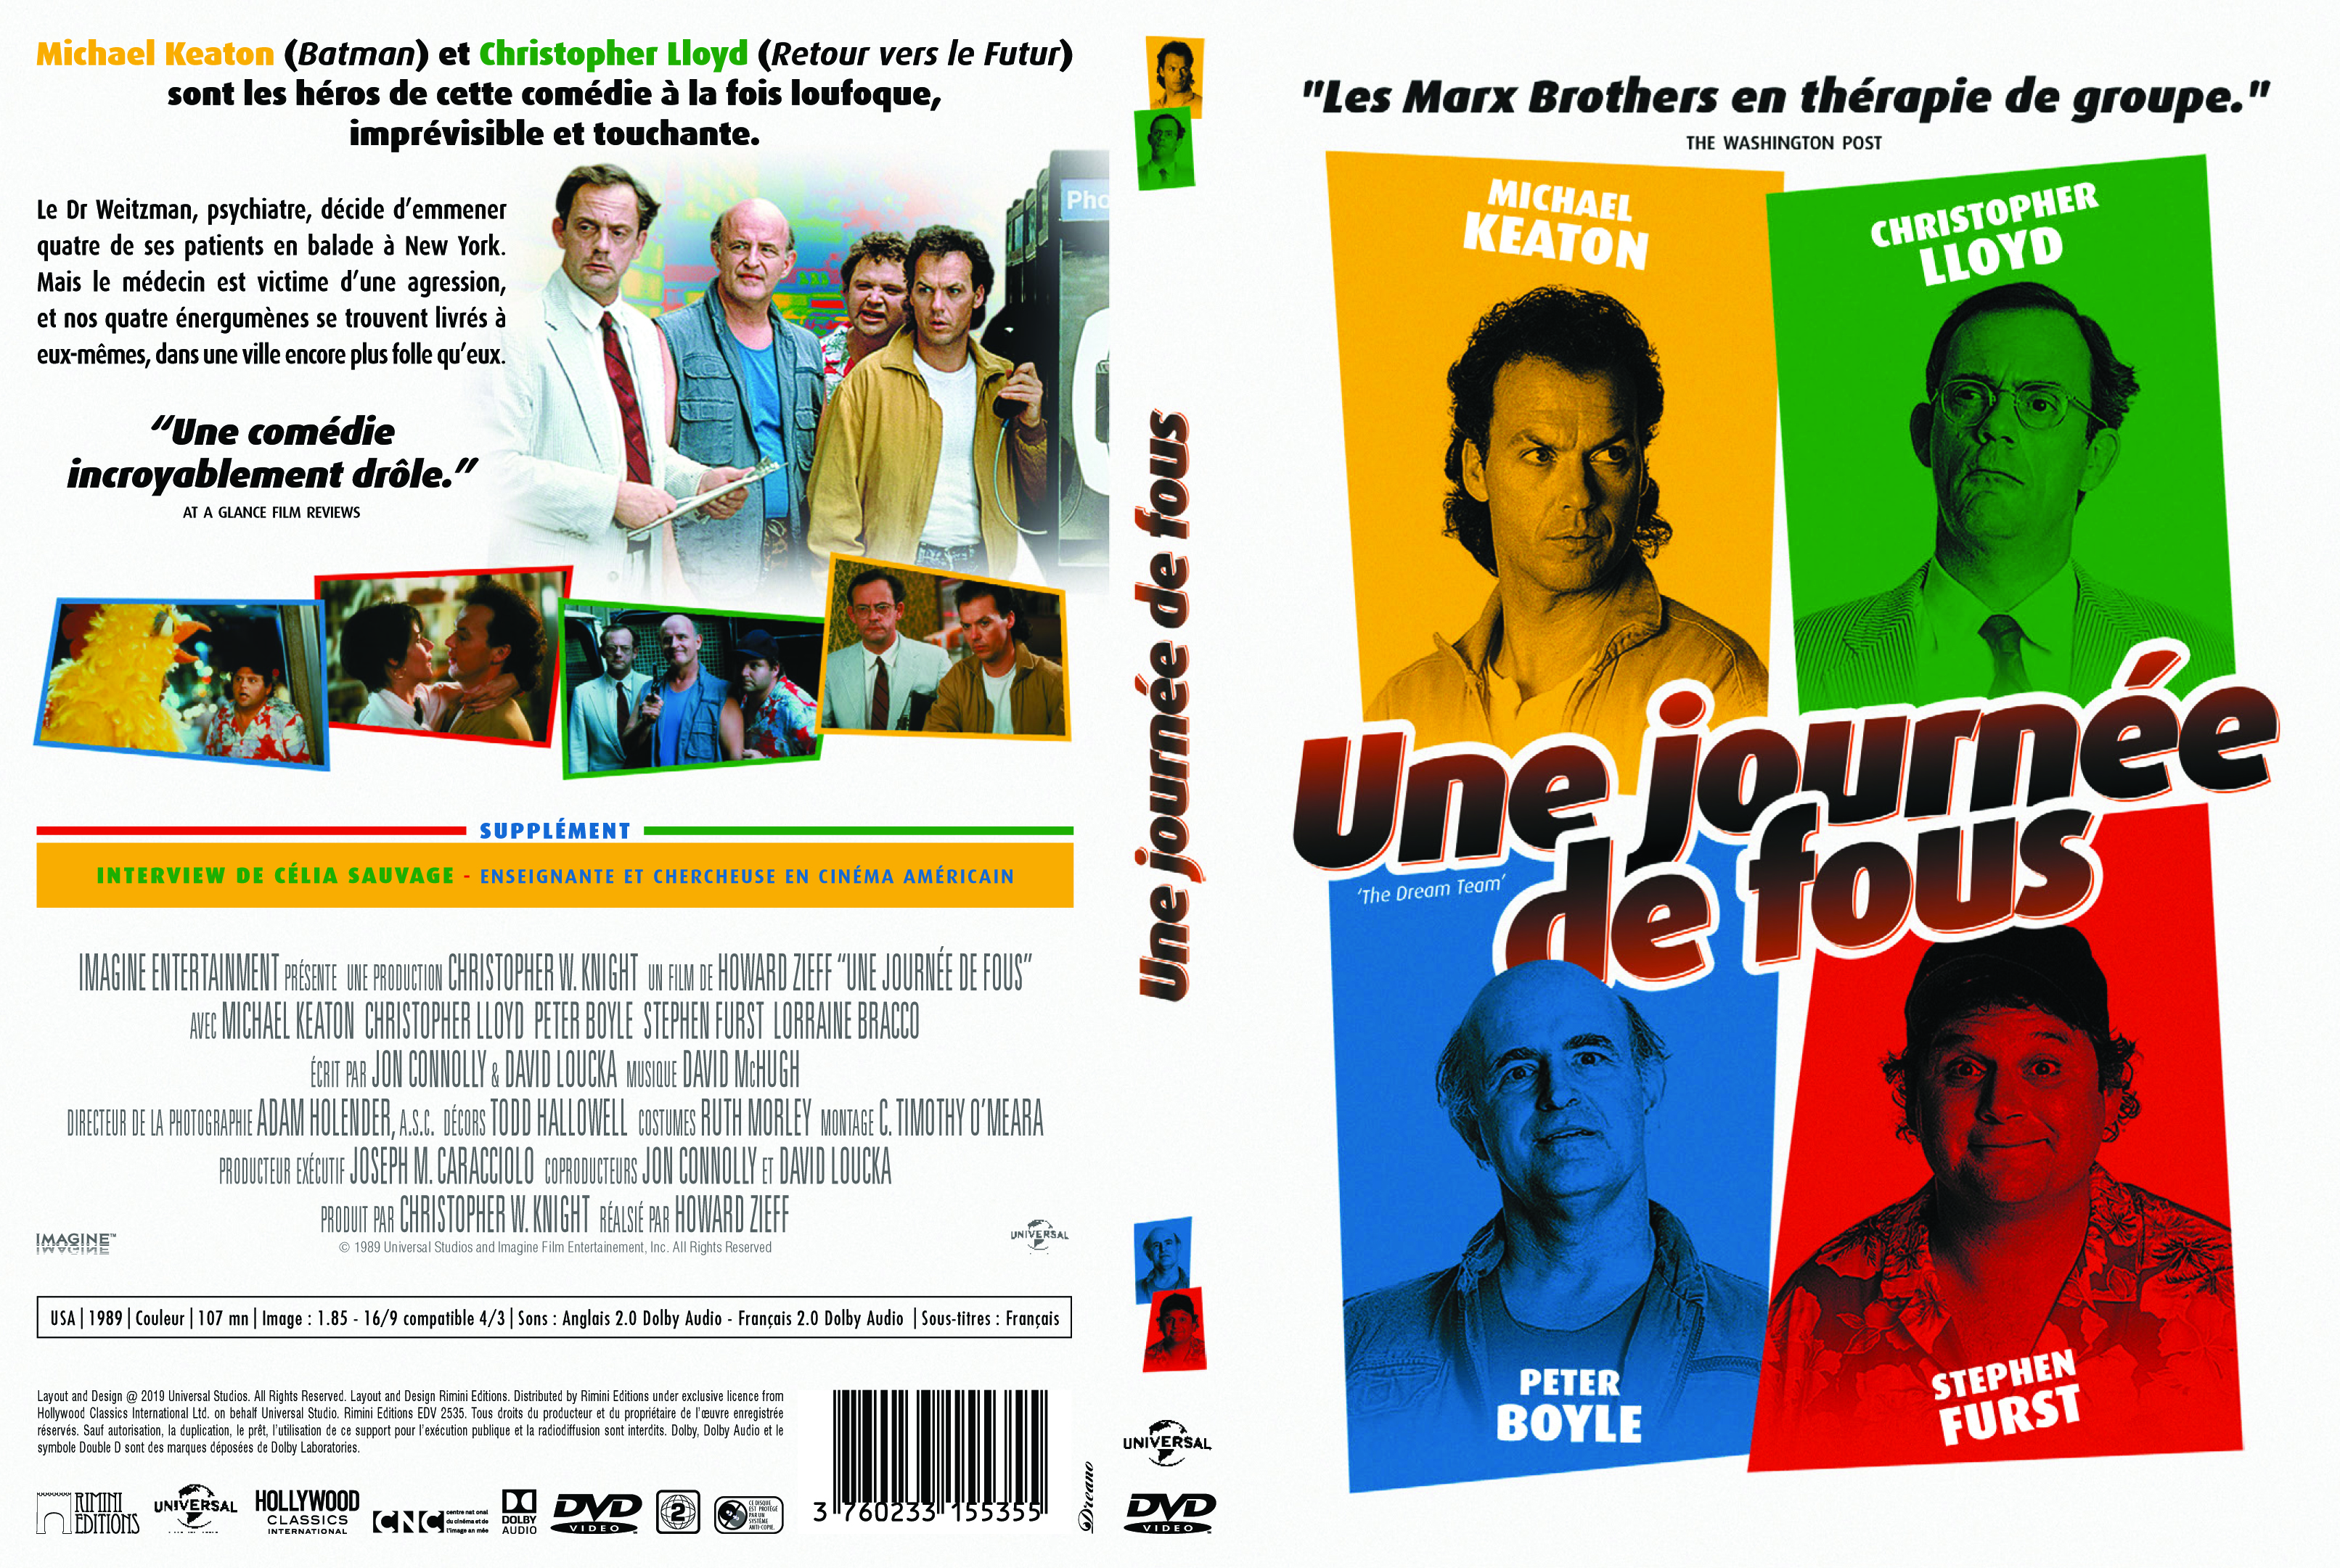 Jaquette DVD Une Journe de fous v2